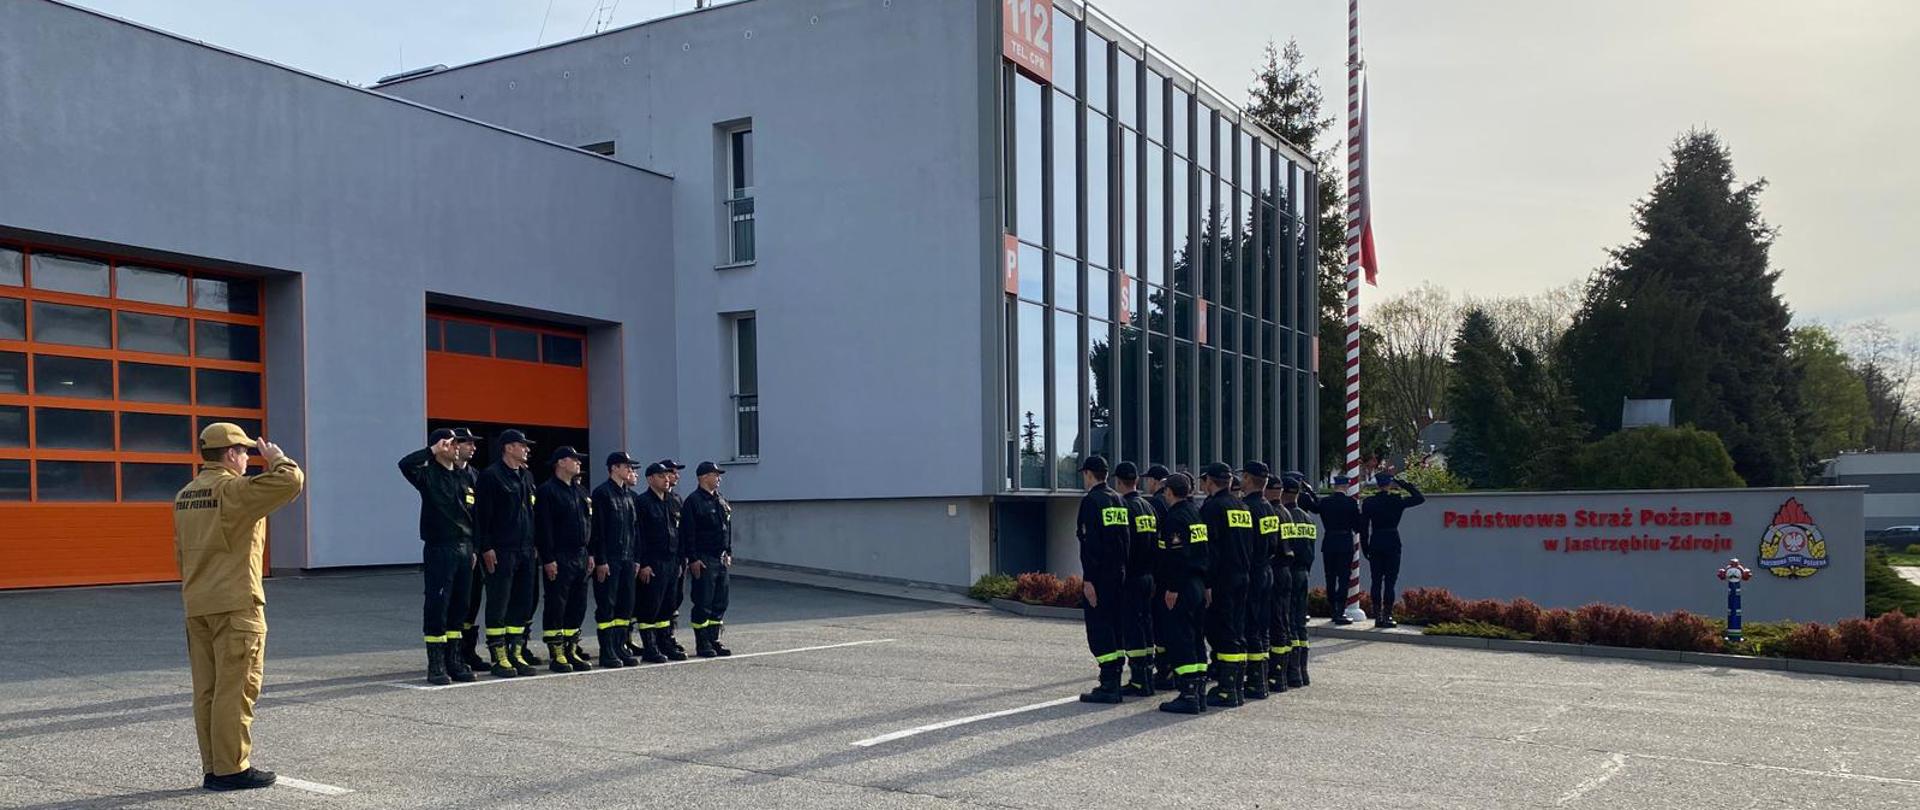 Strażacy wraz z dowódcą podczas uroczystego podniesienia Flagi Państwowej Rzeczypospolitej Polskiej przed siedzibą Komendy Miejskiej PSP w Jastrzębiu-Zdroju.